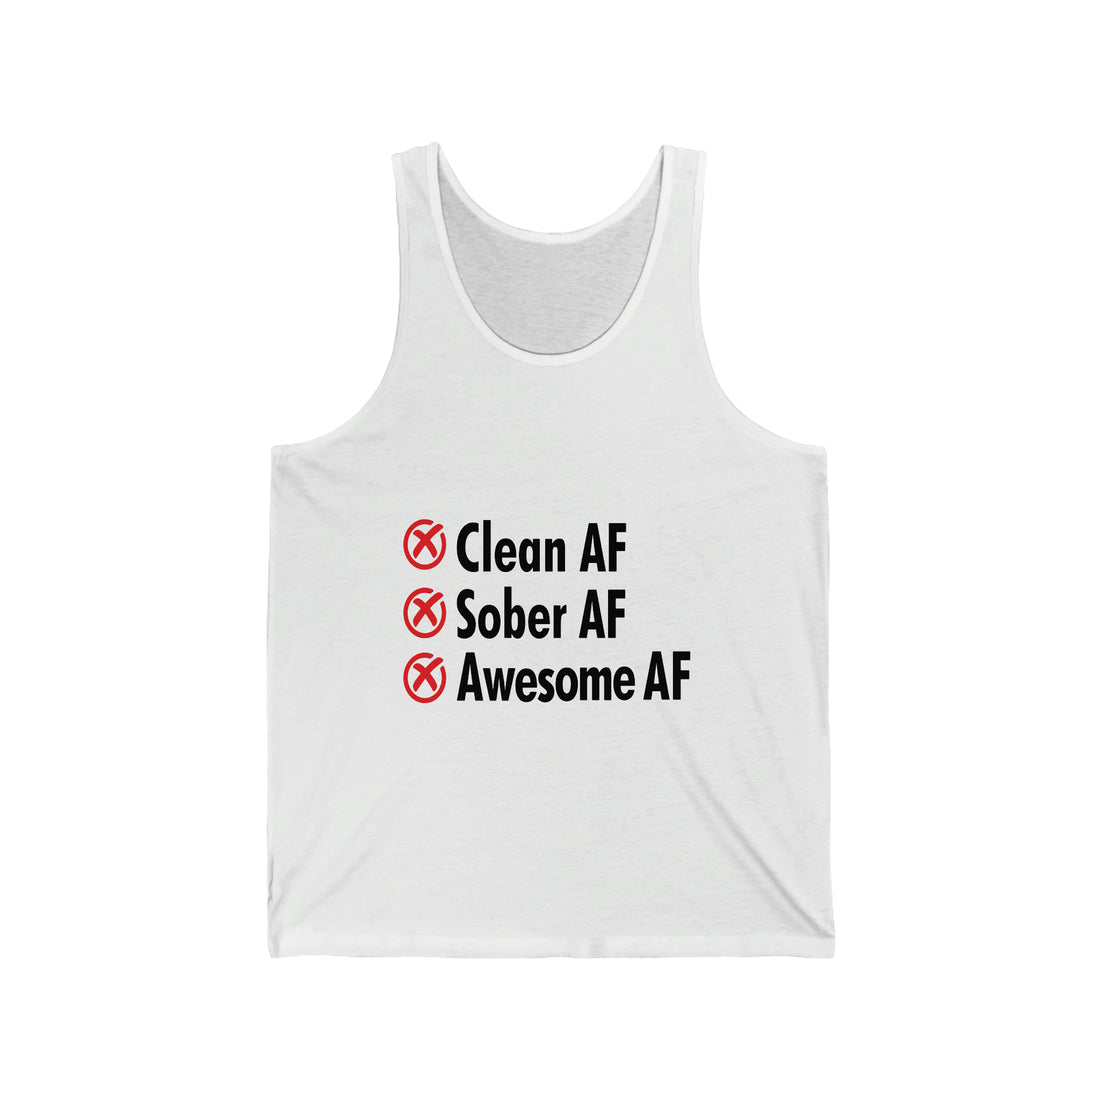 Clean AF Sober AF Awesome AF - Unisex Jersey Tank Top